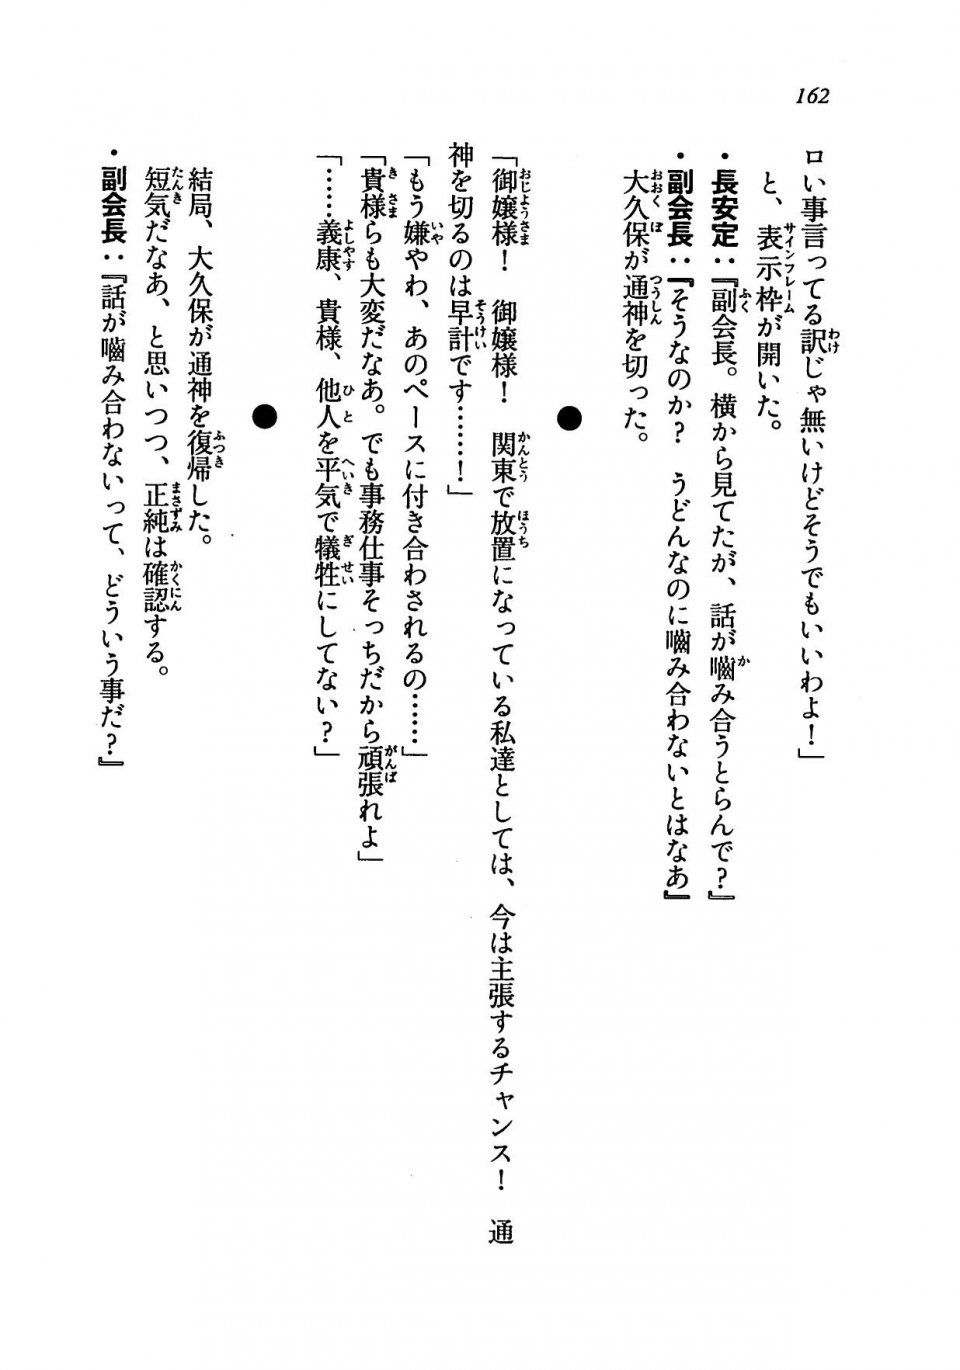 Kyoukai Senjou no Horizon LN Vol 19(8A) - Photo #162